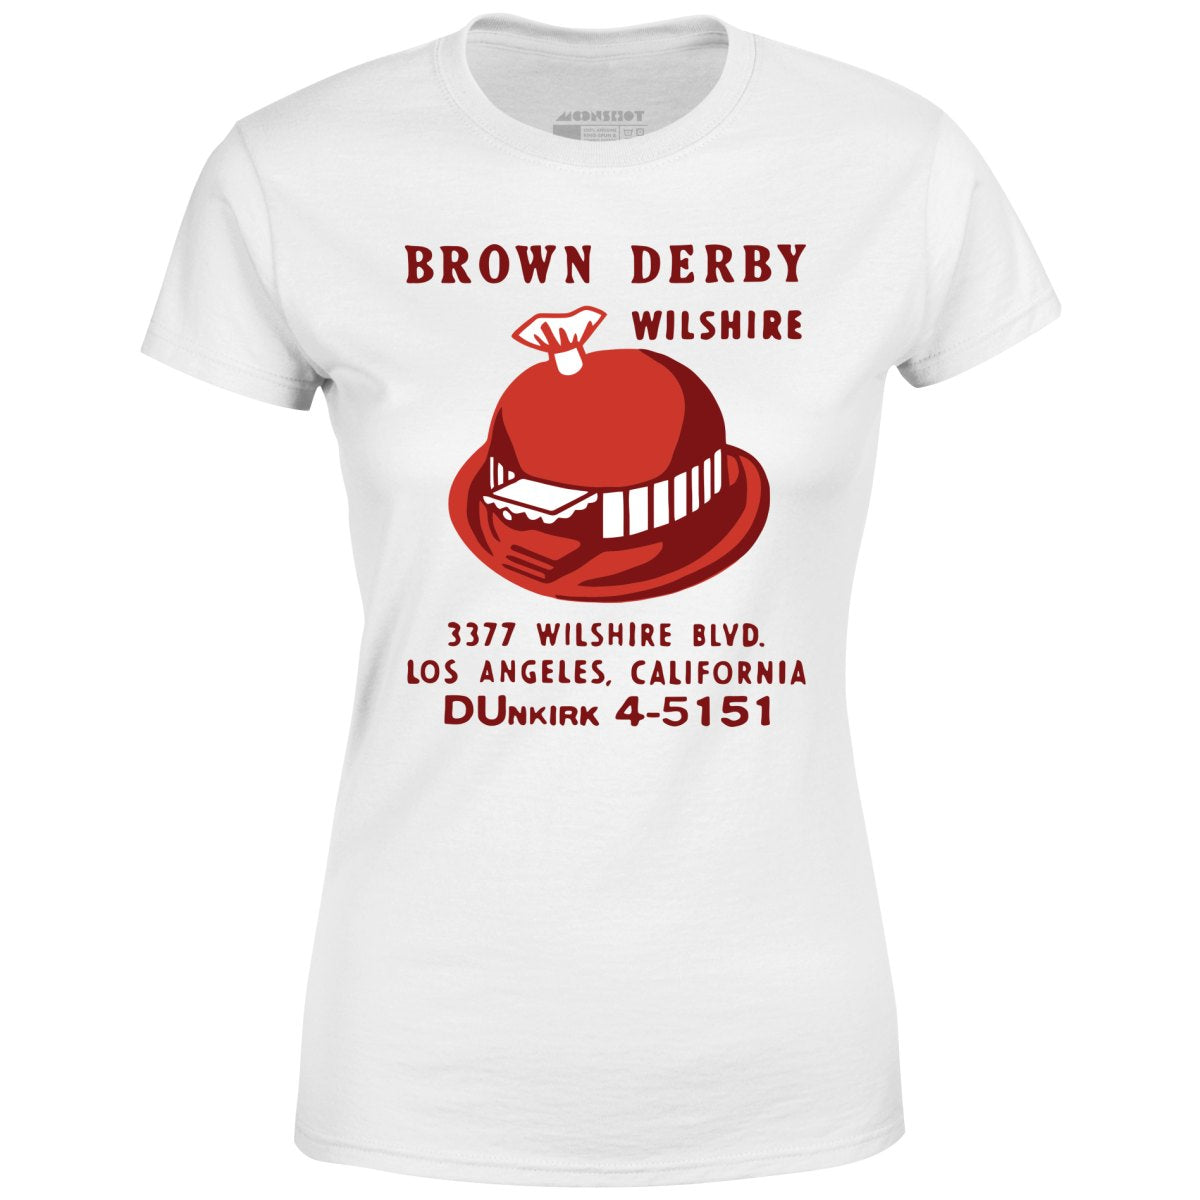 Brown Derby - Los Angeles, CA - Vintage Restaurant - Women's T-Shirt